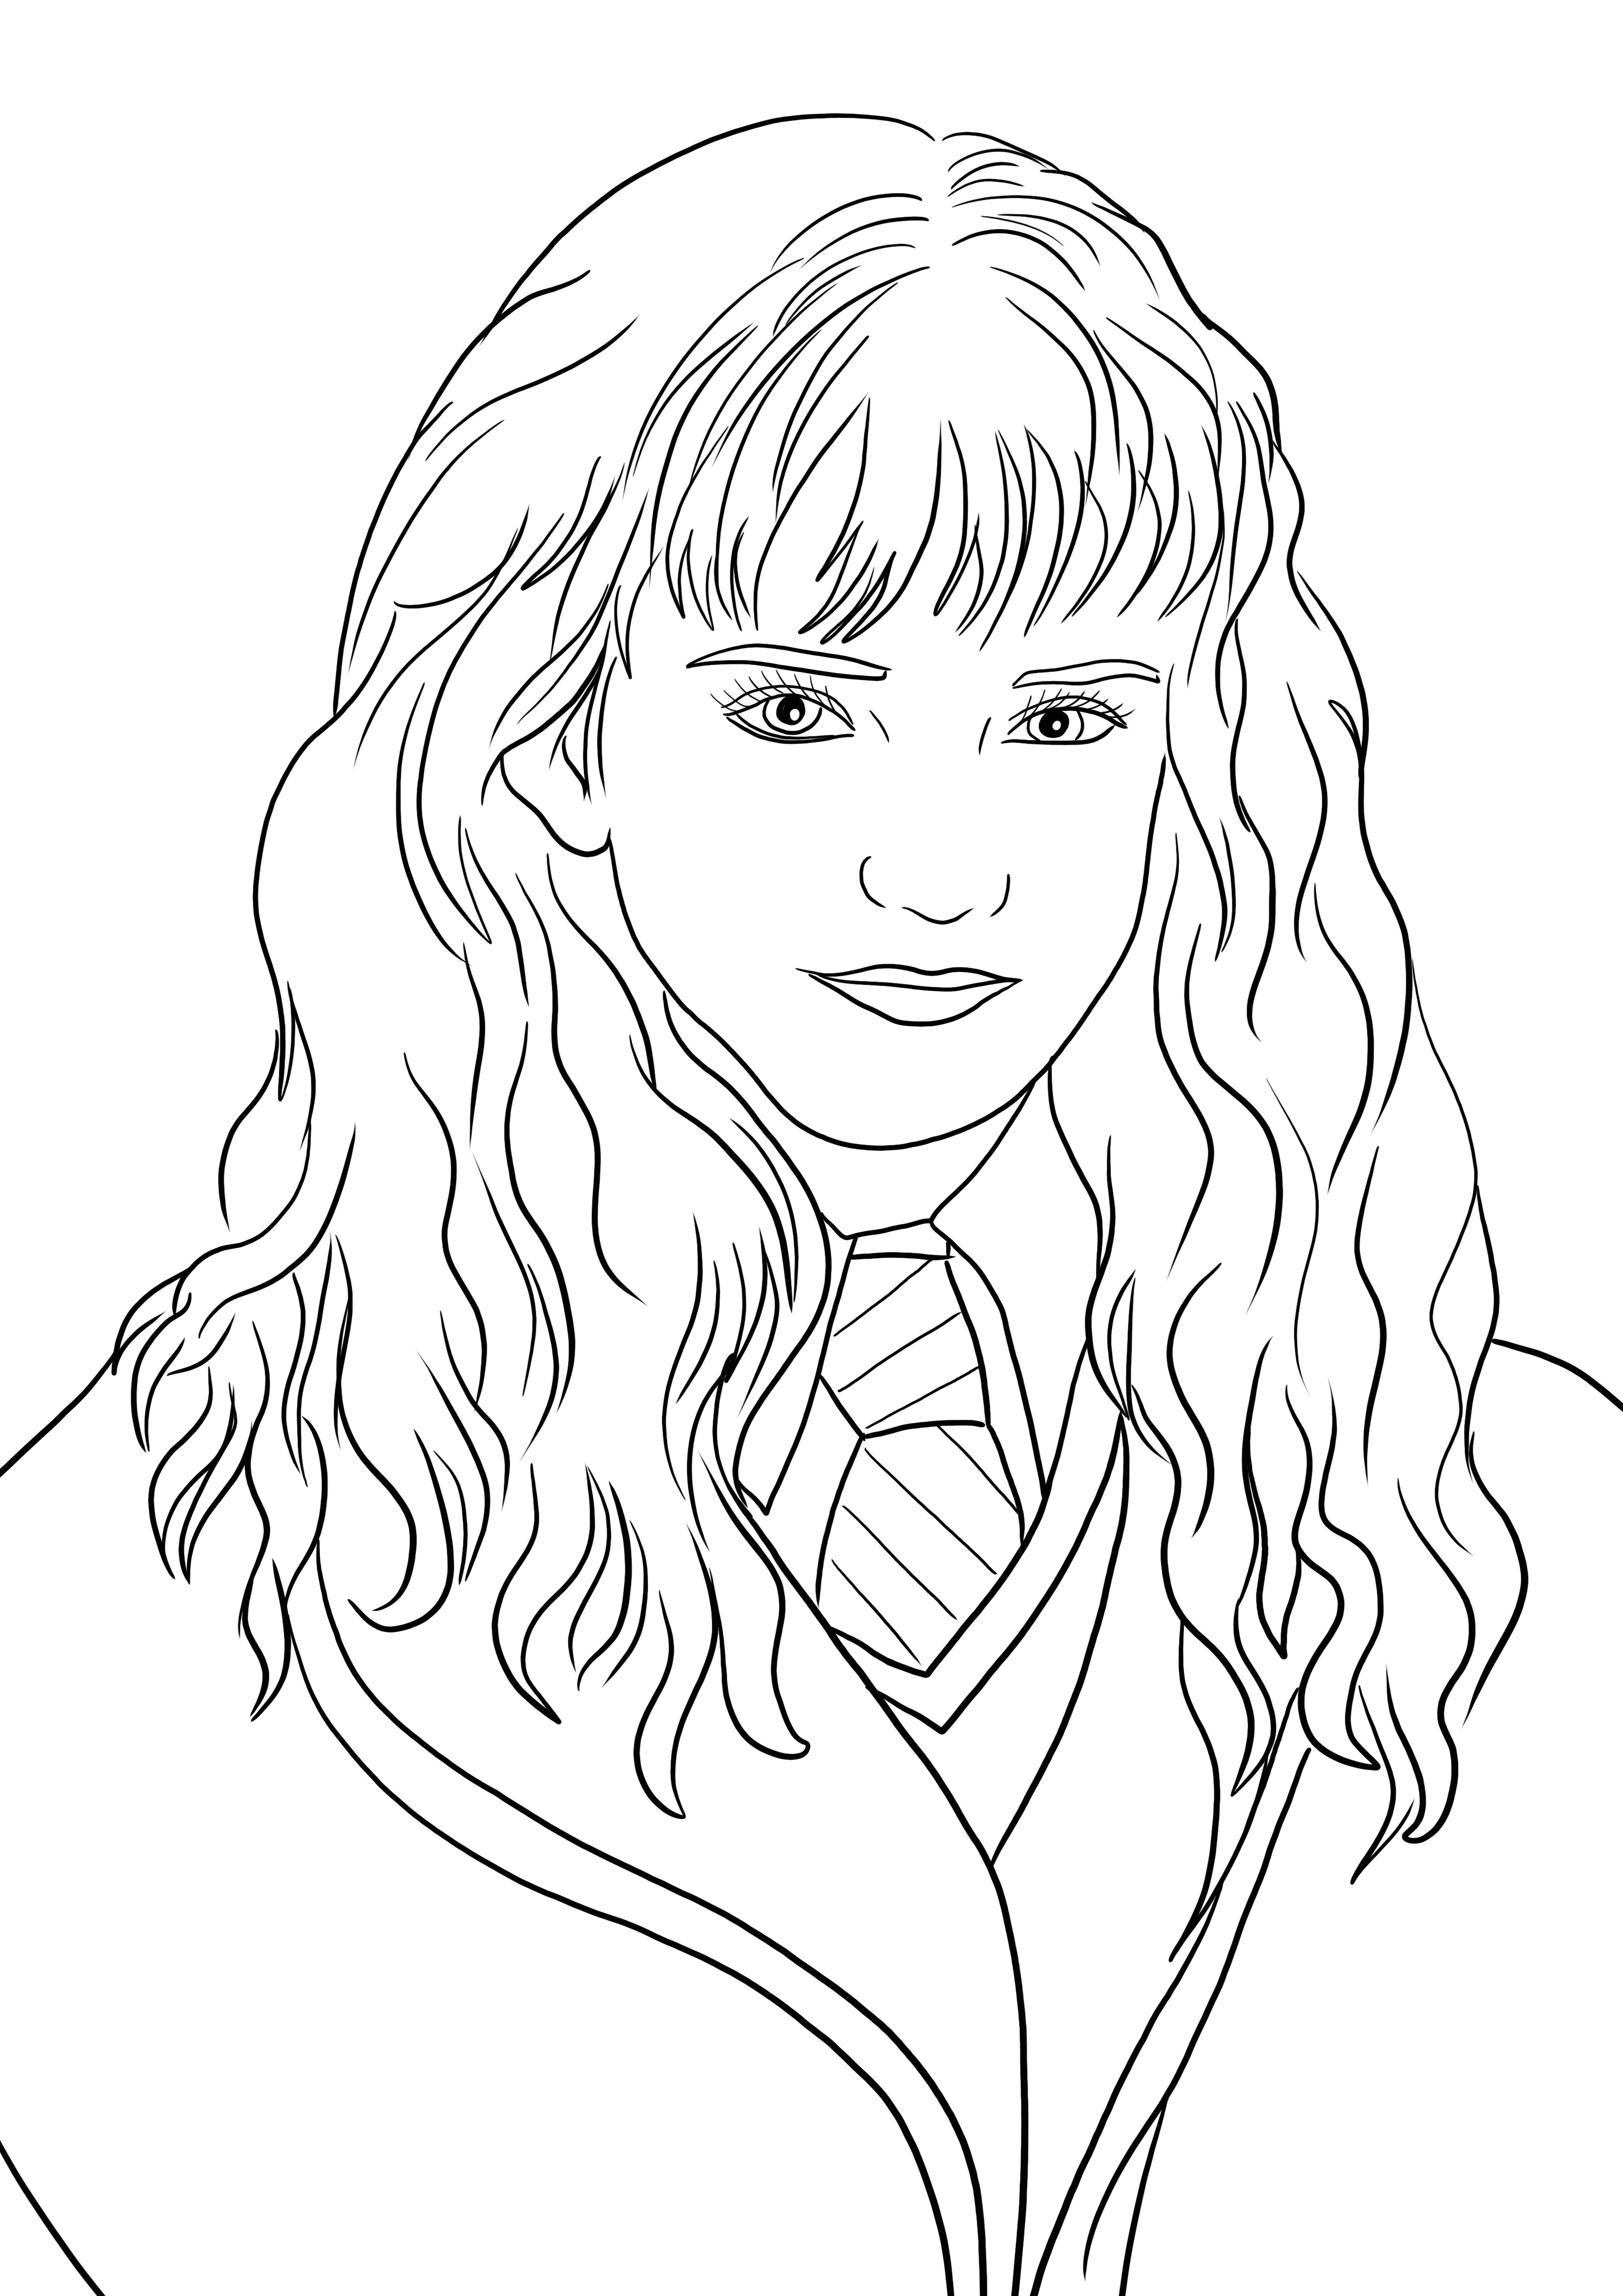 Boyamaya ve eğlenmeye hazır Hermione Granger'ın ücretsiz yazdırılabilirliği